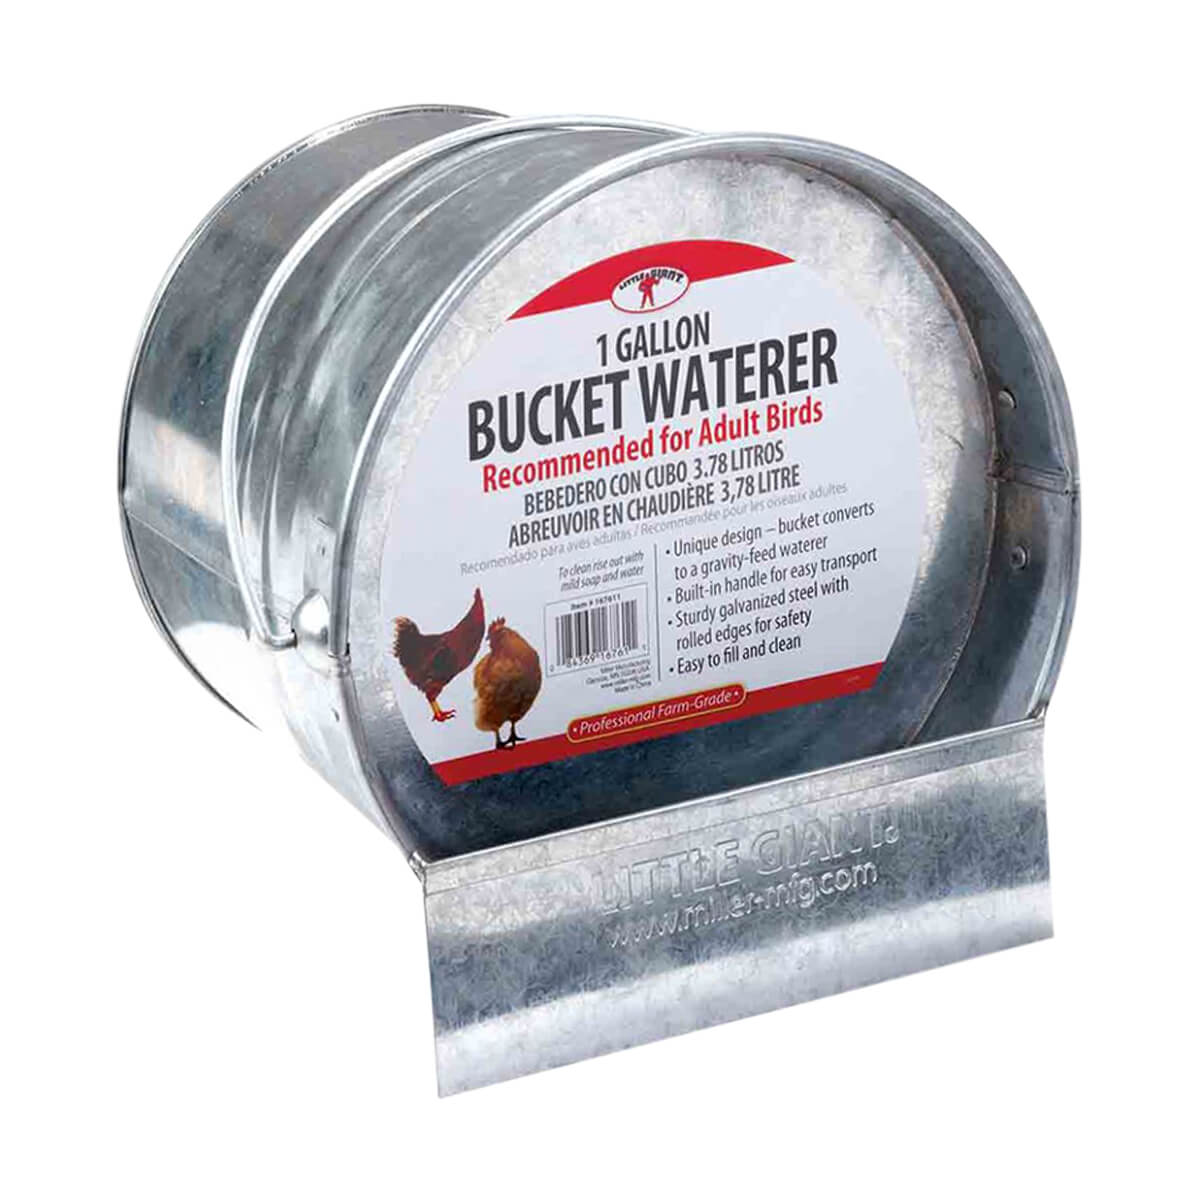 Waterer Bucket - 1 gal